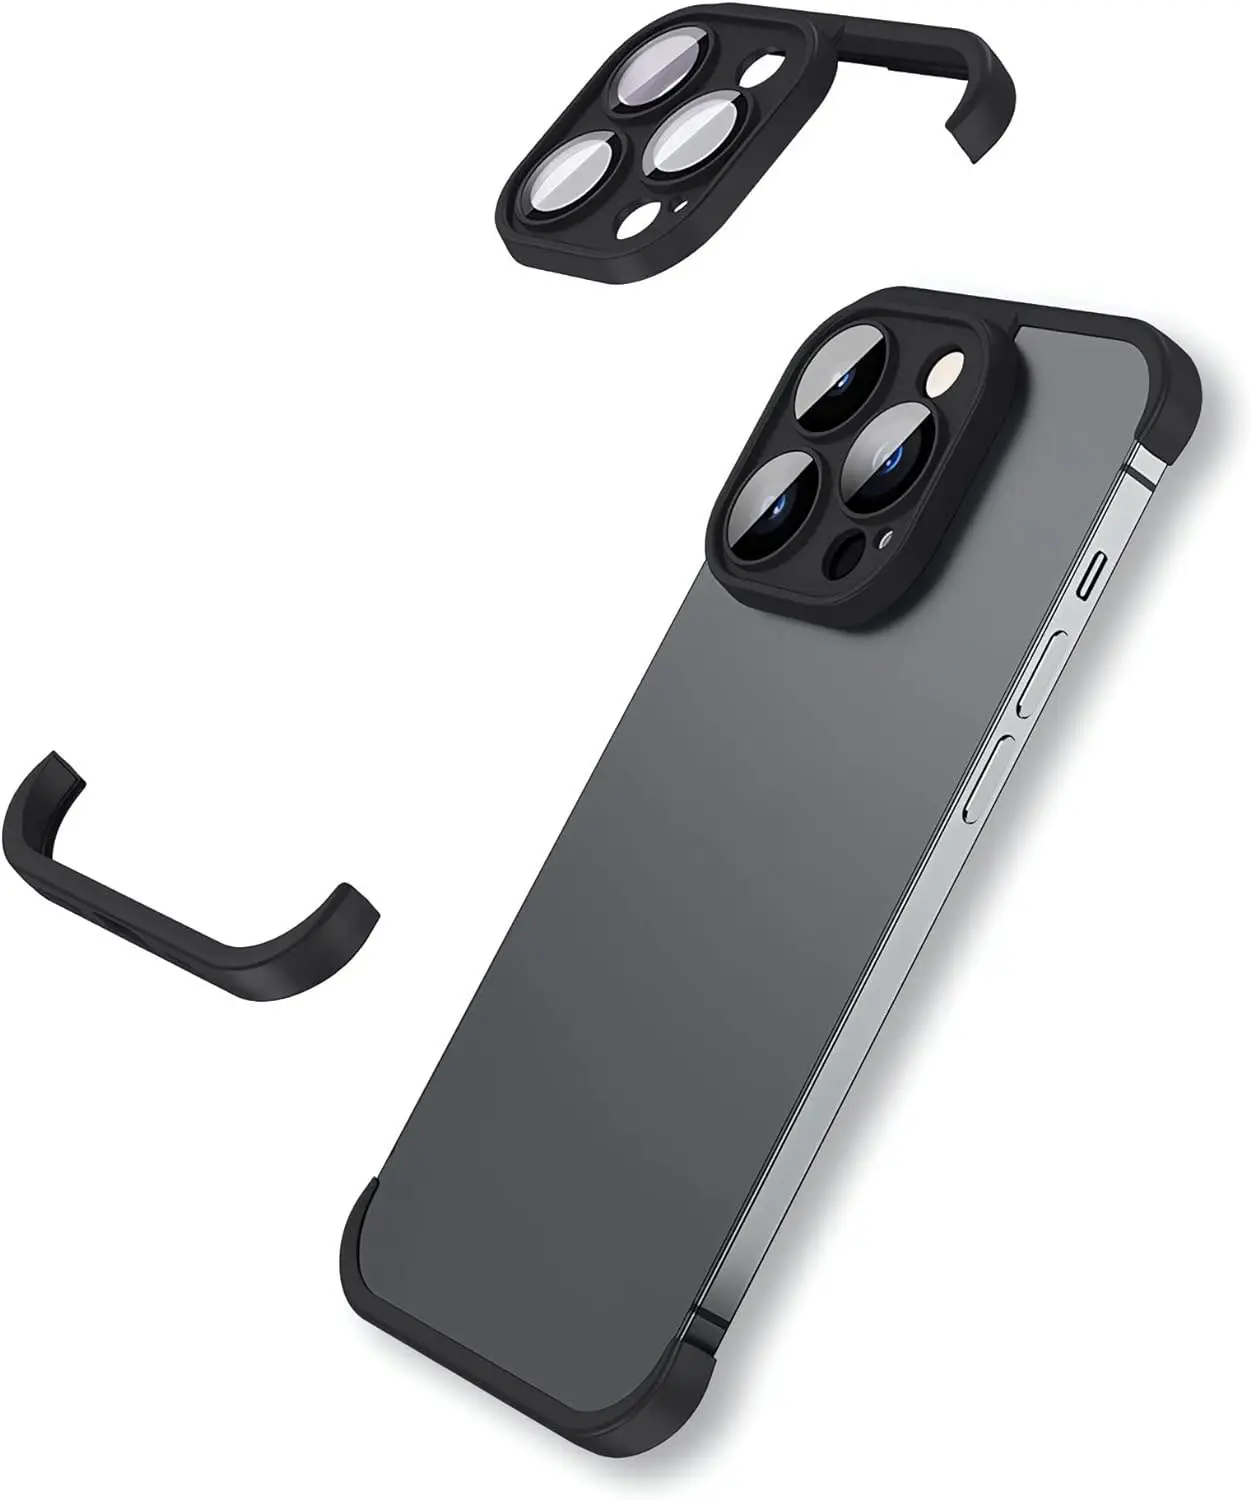 Ince ışık çerçeve koruyucu telefon kılıfı kamera dört köşe Lens koruma için iPhone için koruyucu Film